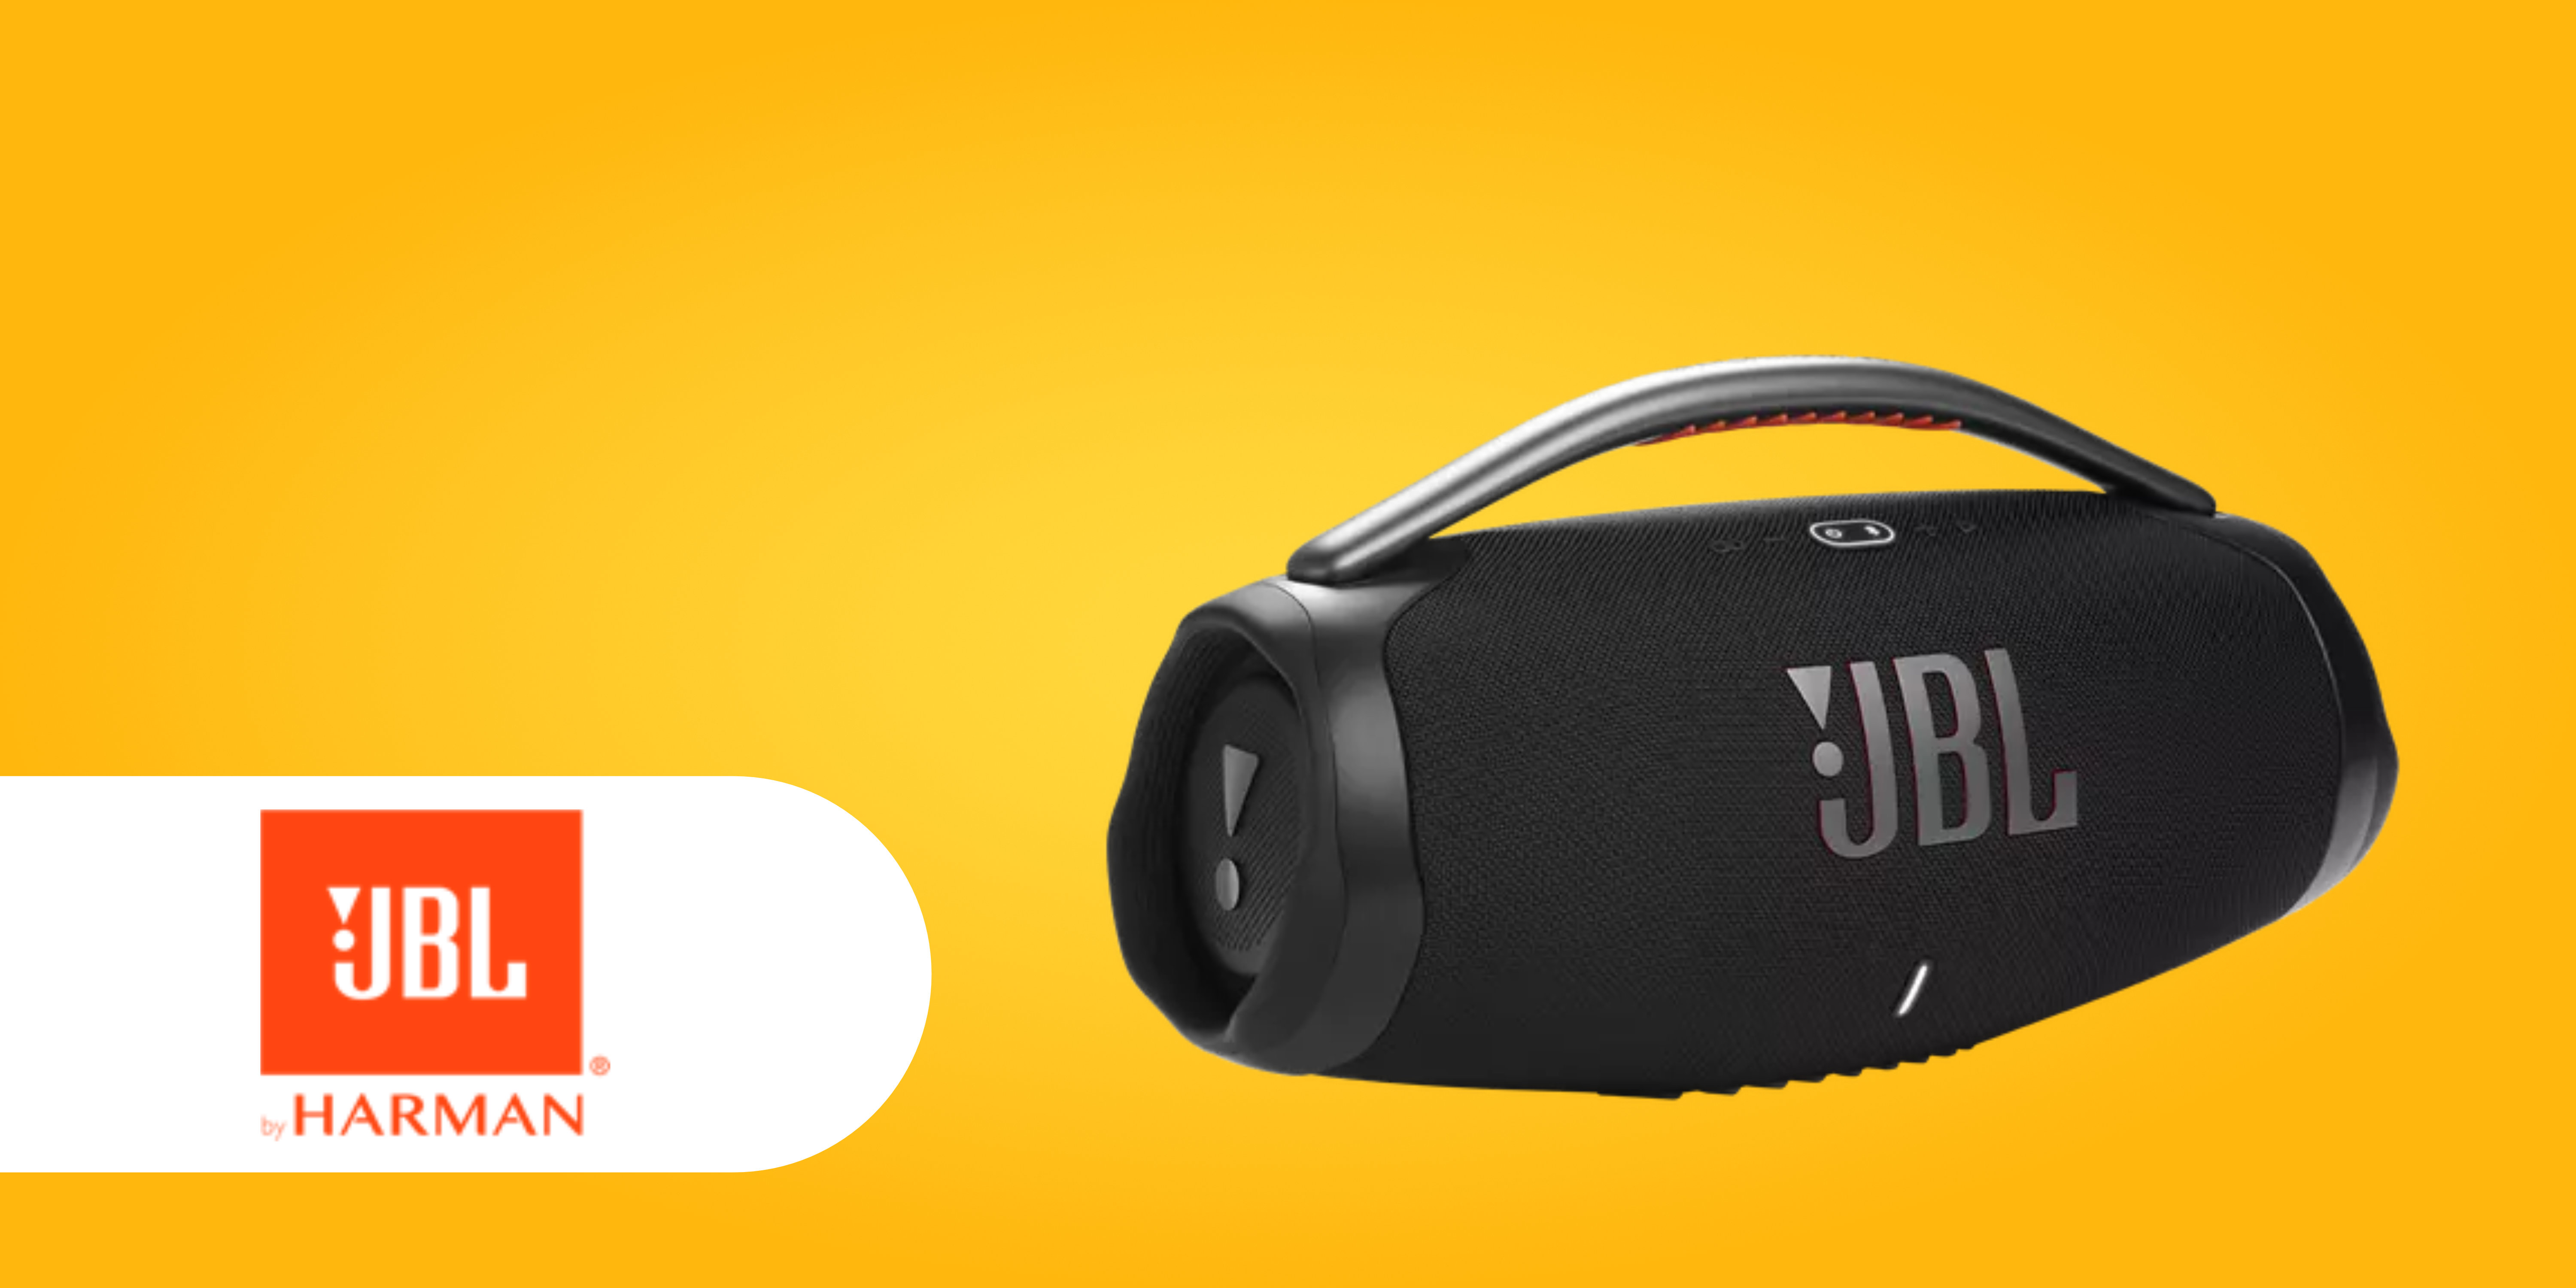 JBL-Speaker mit WLAN: erhältlich endlich 3 Boombox JBL Neue Wi-Fi